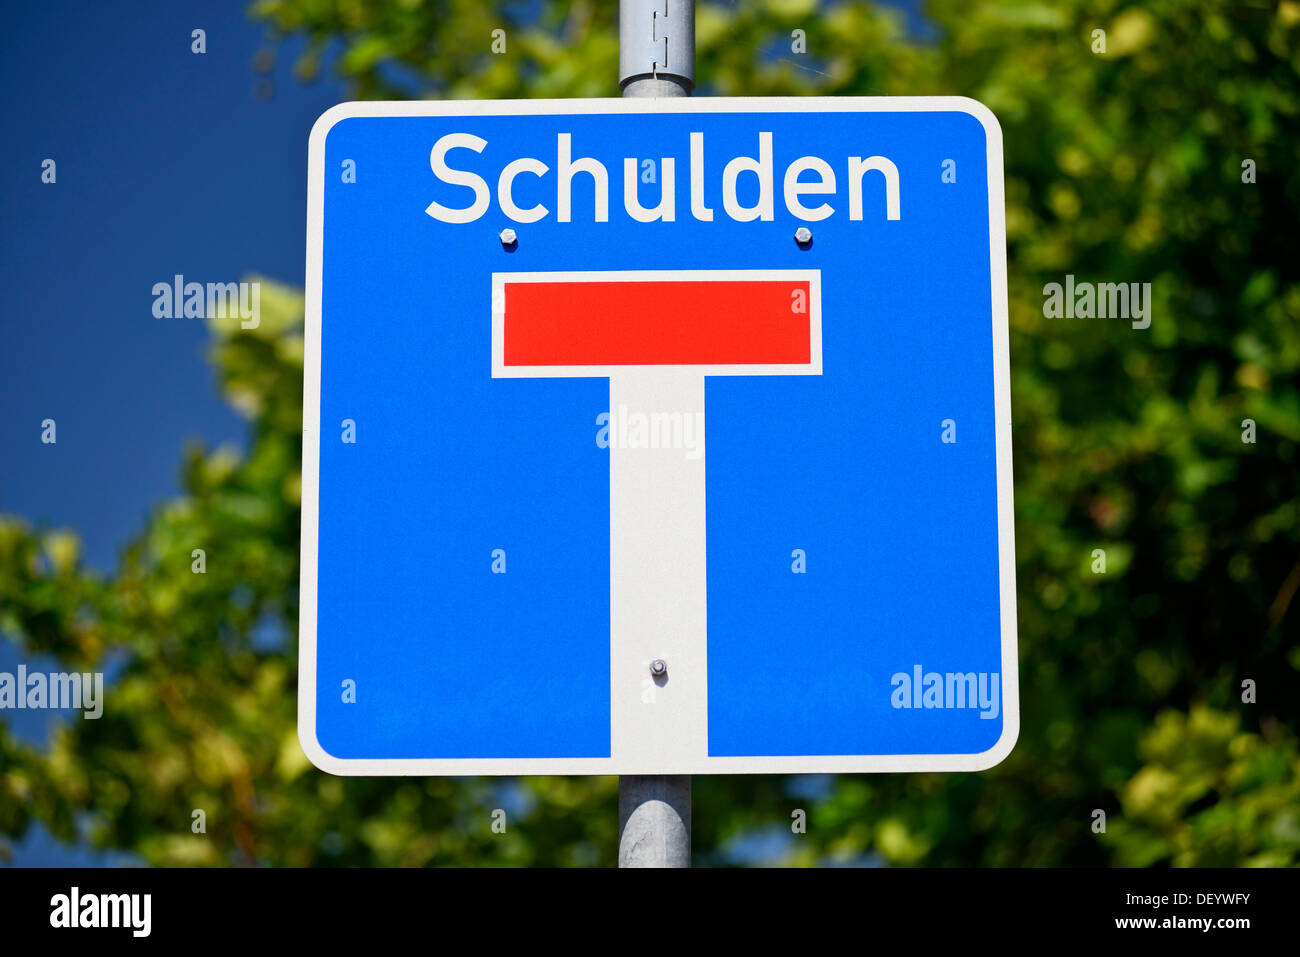 Signe de la circulation, rue sans issue ou cul-de-sac road, avec le mot 'Schulden', l'allemand pour "dettes", des images symboliques pour dette Banque D'Images